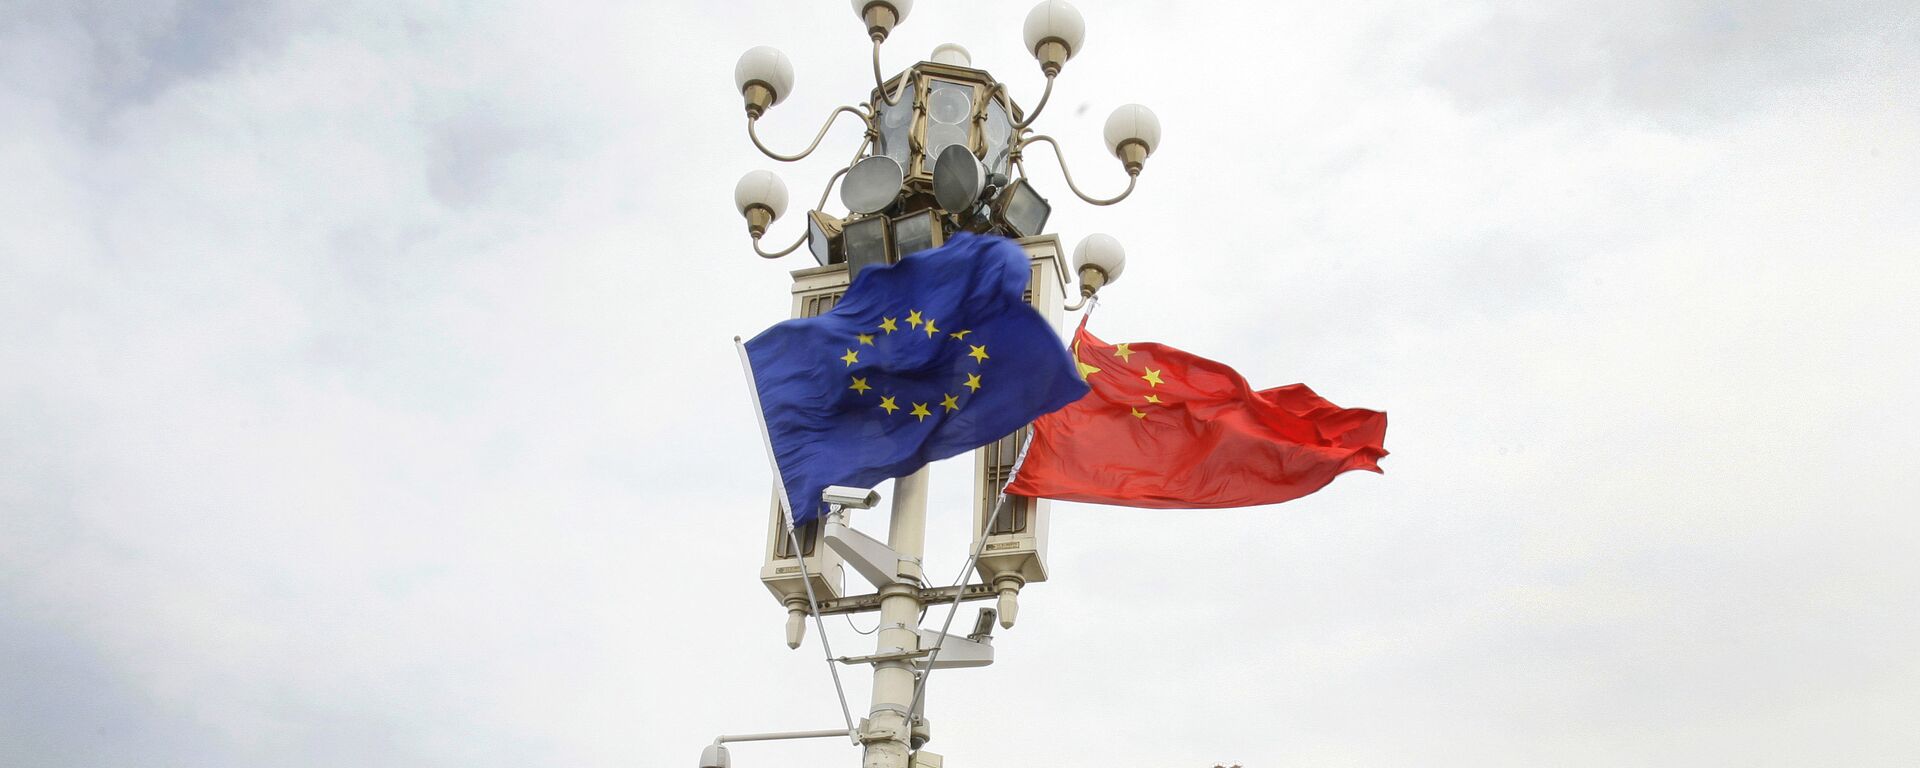 Las banderas de la UE y China - Sputnik Mundo, 1920, 16.09.2020